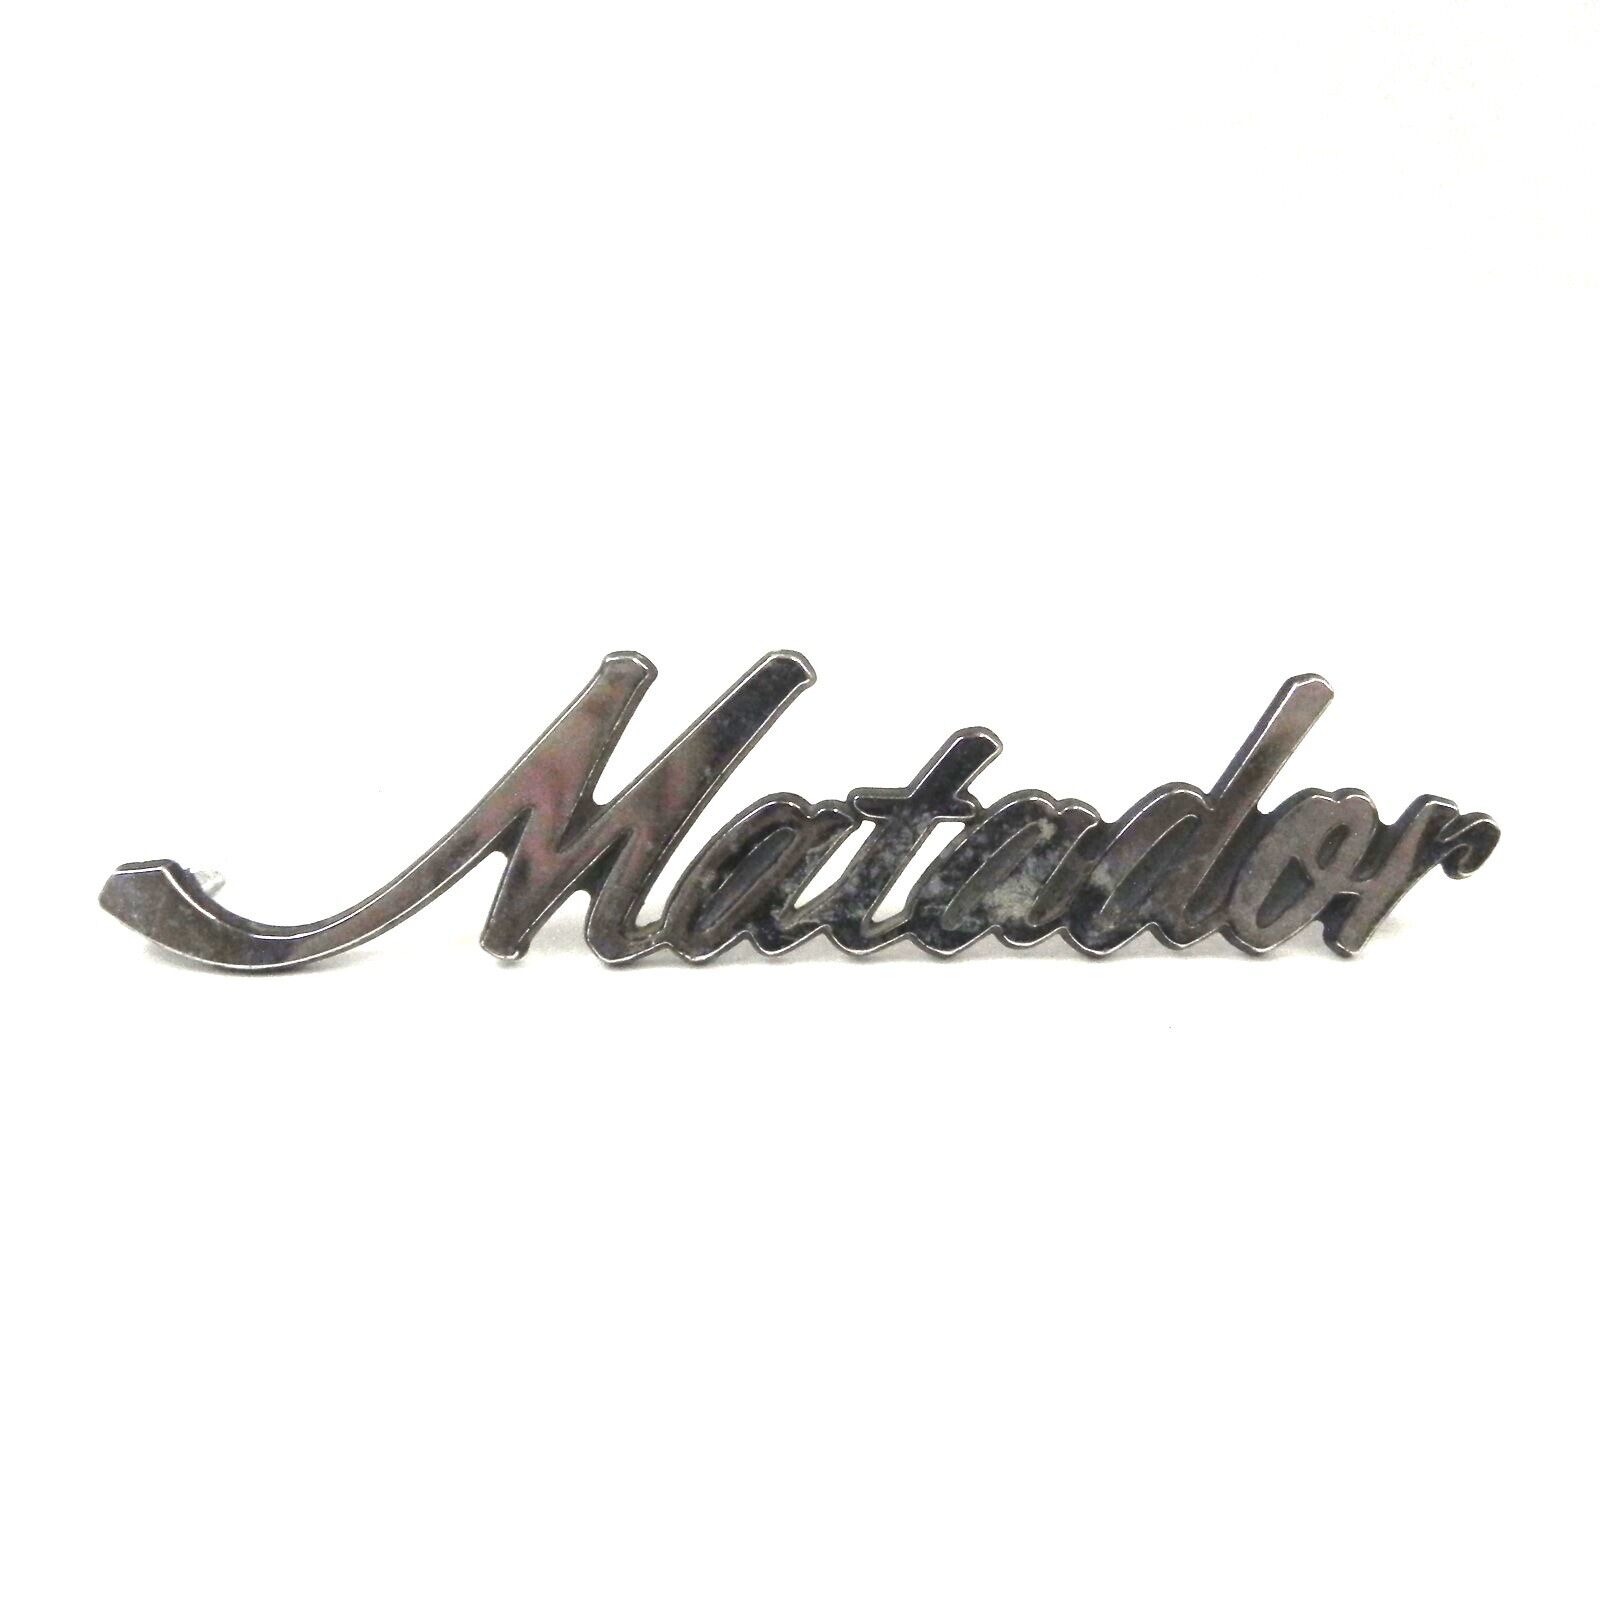 1968-73 AMC MATADOR AMC #3633534 FENDER  SCRIPT BADGE EMBLEM USED VINTAGE EMBLEM